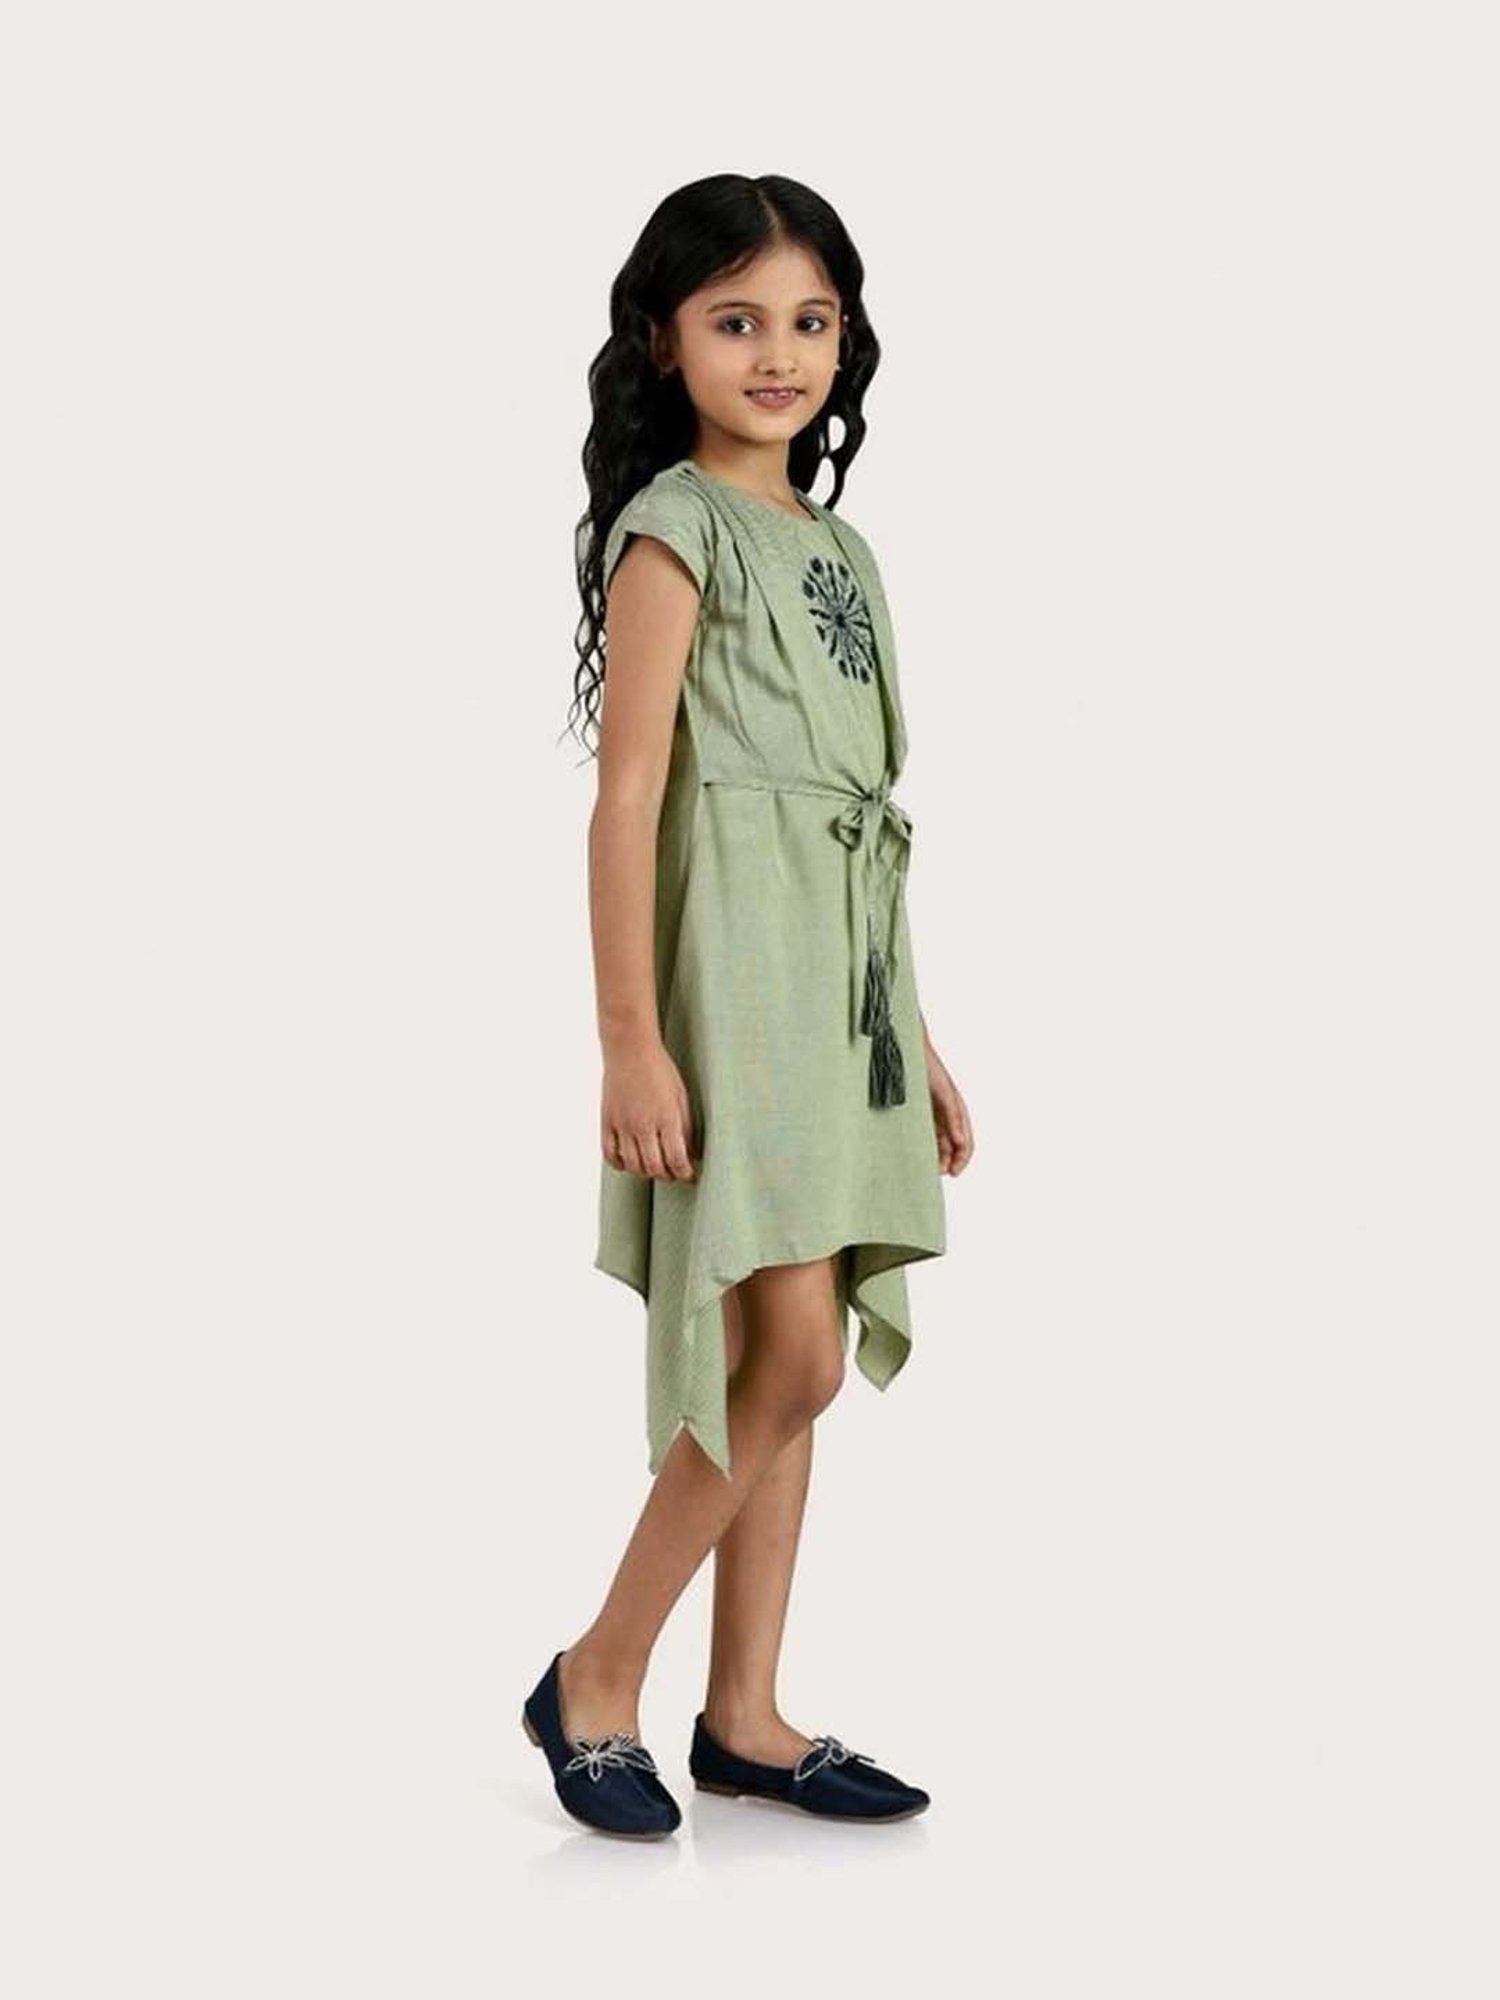 Neon Green Dresses - Buy Neon Green Dresses online in India